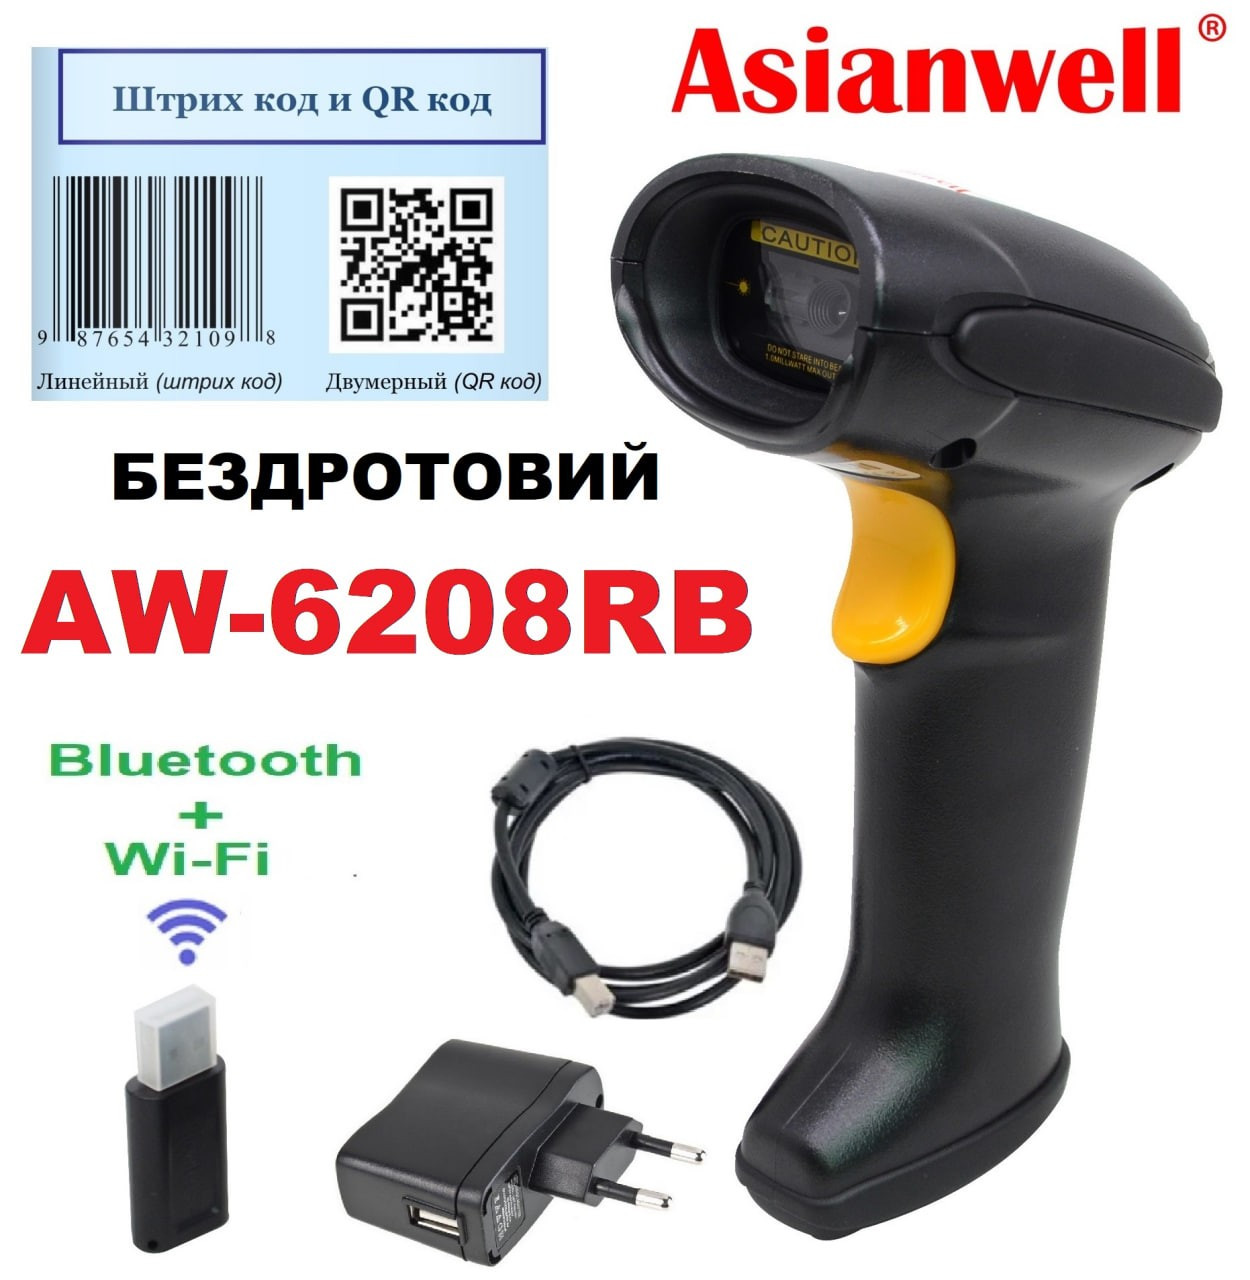 Сканер бездротовий Asianwell 6208RB з блоком живлення, receiver 2,4G + BT, image 2D, чорний